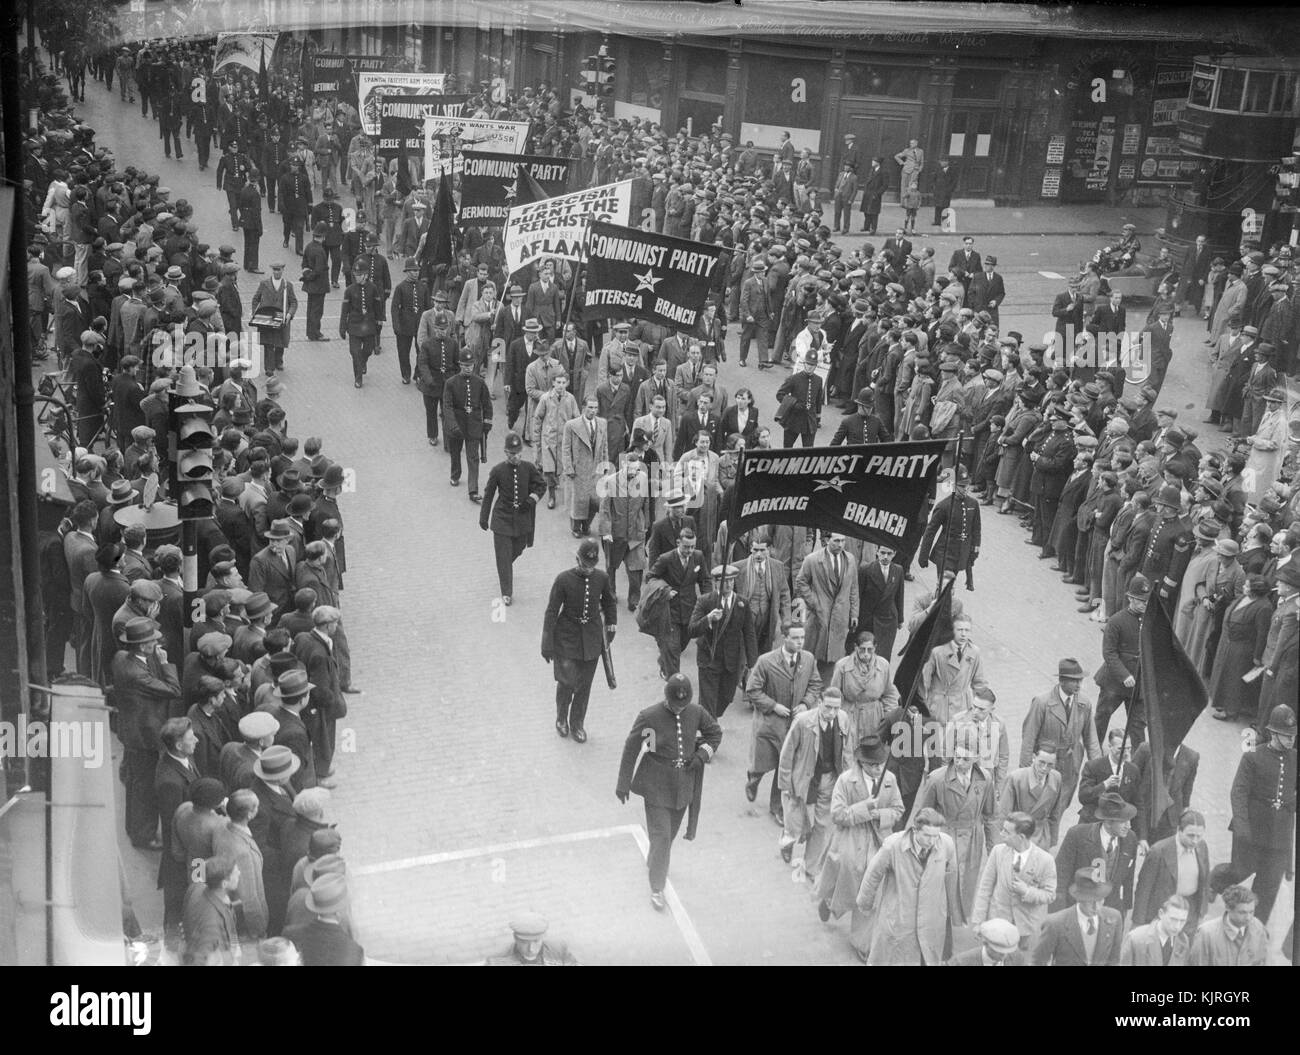 Imagen que muestra la manifestación antifascista en Londres el 4 de octubre de 1936 que pasó a ser conocido como "La batalla de Cable Street'.La Batalla de Cable Street fue una rebelión que tuvo lugar en el cable Street, en el East End de Londres. Fue un enfrentamiento entre la Policía Metropolitana, enviados a proteger a una marcha por los miembros de la Unión Británica de fascistas, dirigido por Oswald Mosley, y varios manifestantes anti-fascista, inclusive los anarquistas, comunistas, Irlandeses, Judíos y grupos socialistas. La mayoría de los manifestantes y contra-manifestantes viajaron a la zona para este fin. Foto de stock